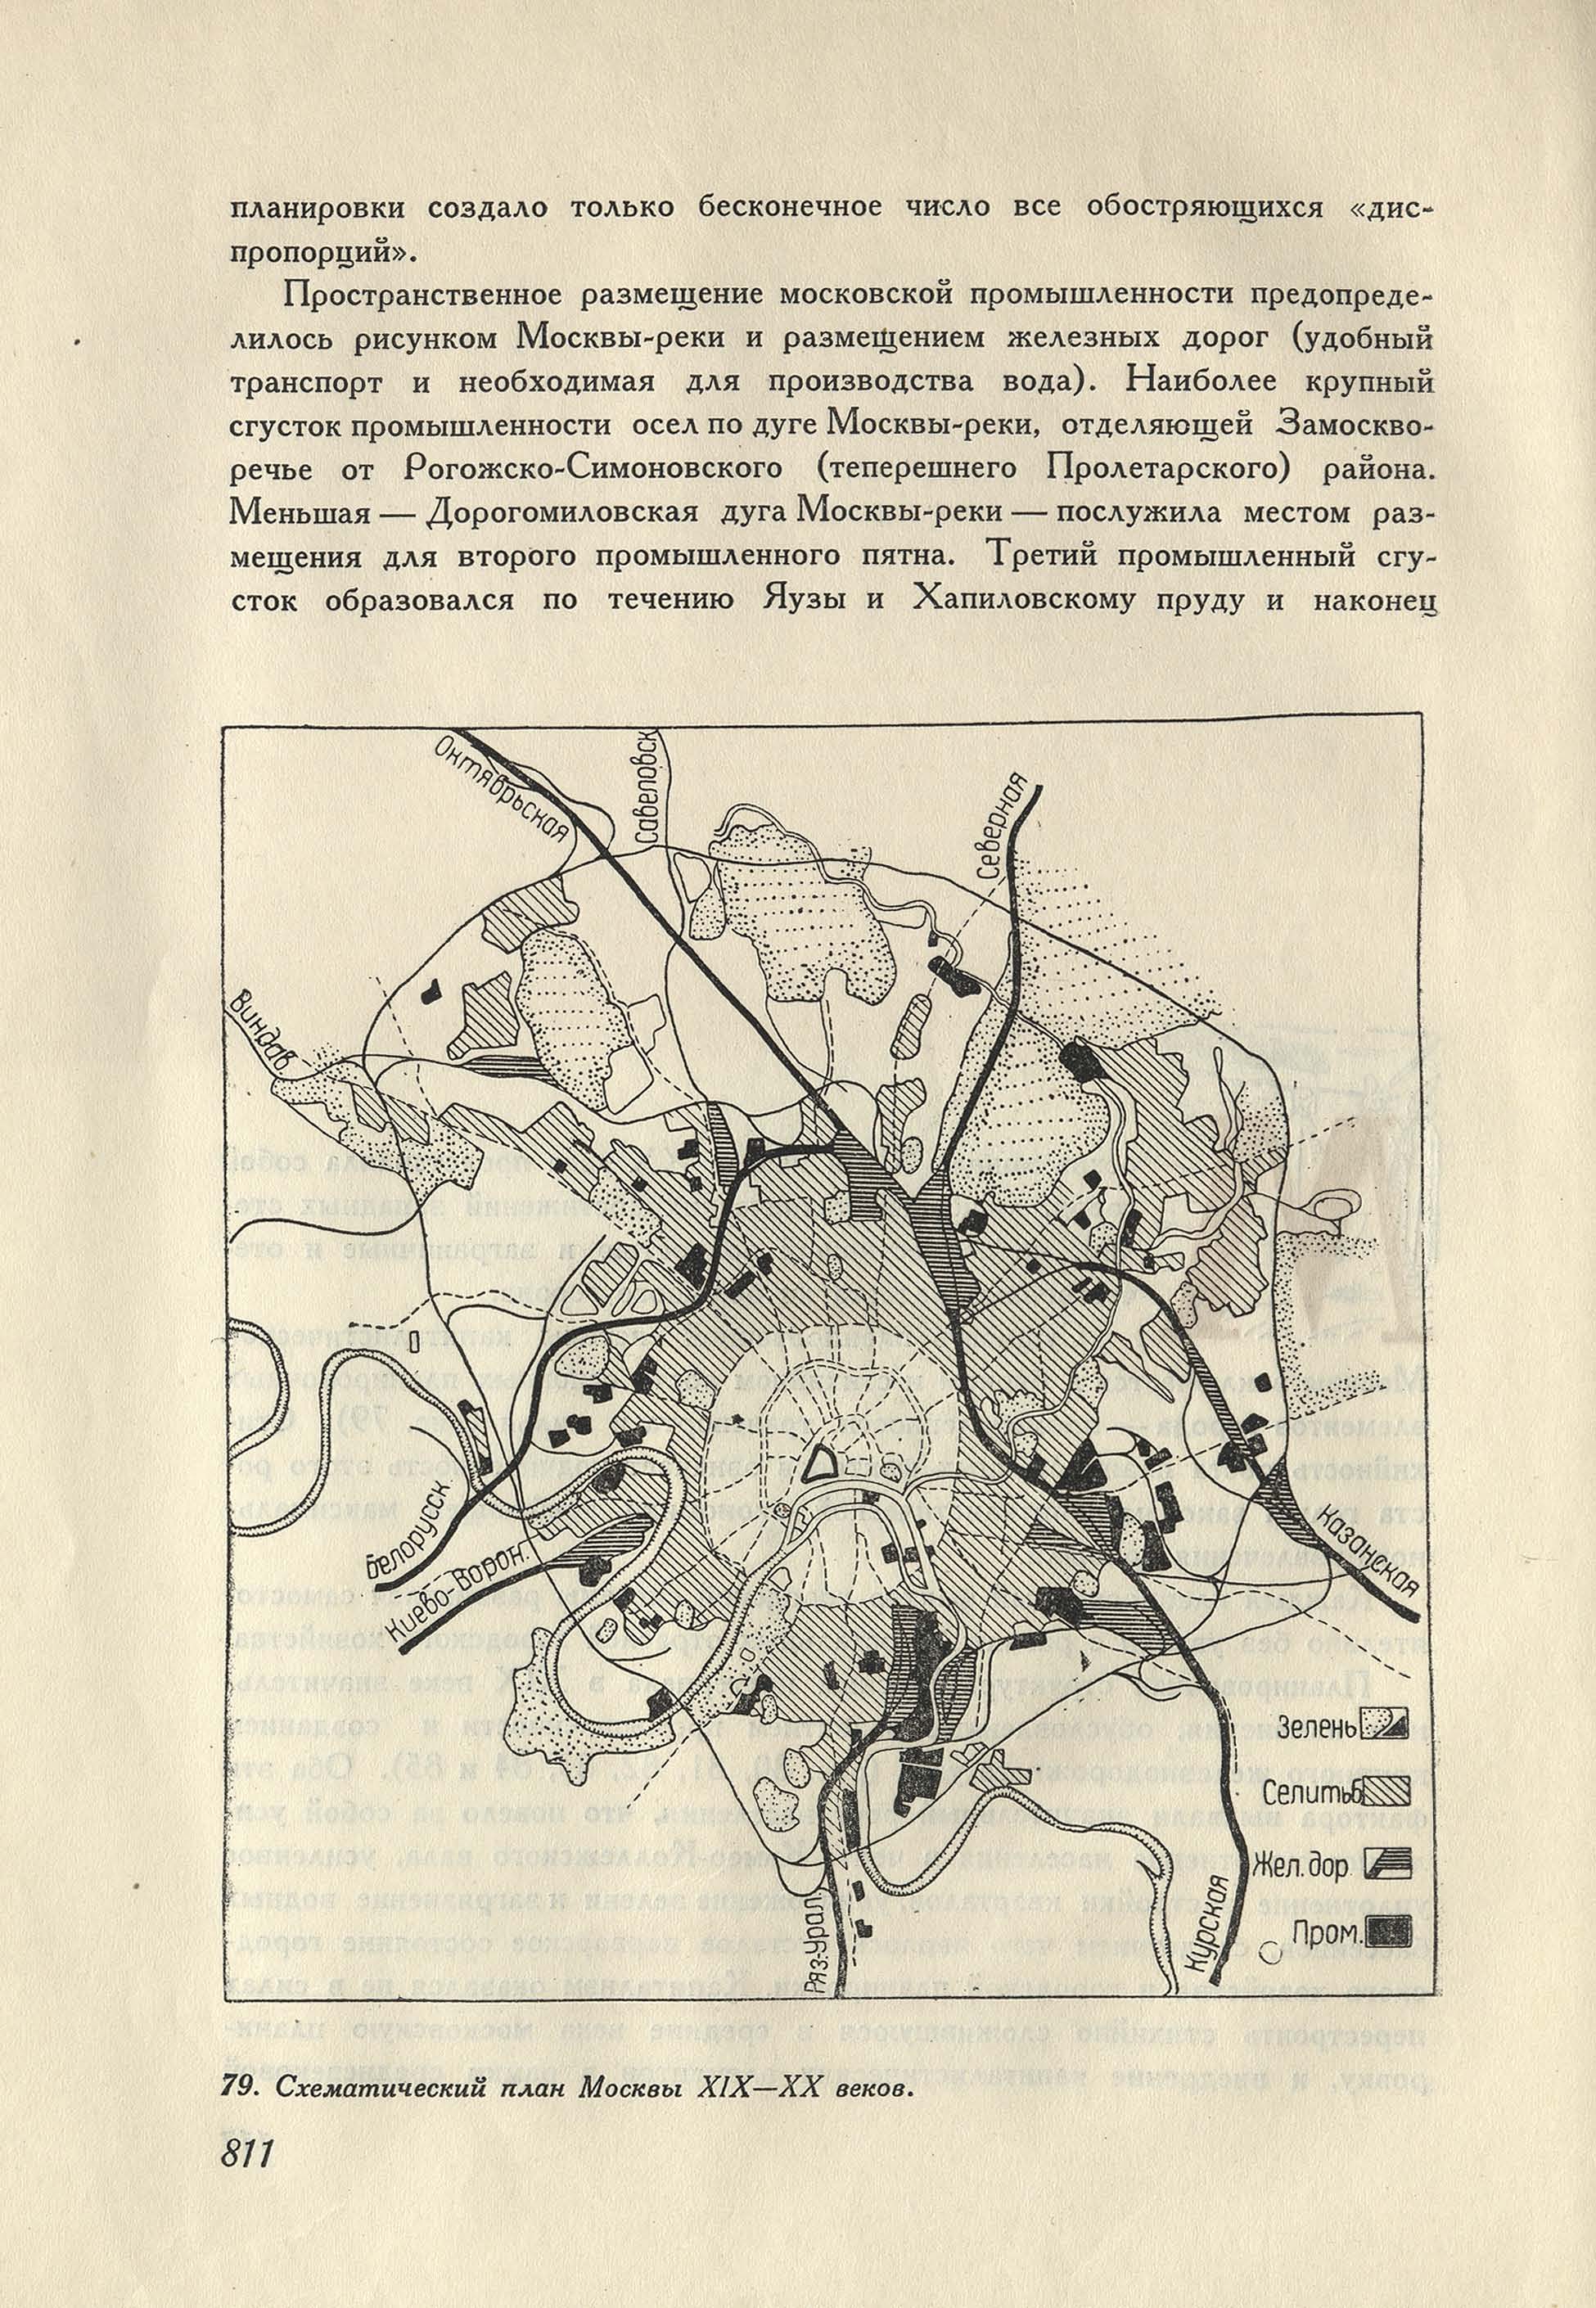 Схематический план Москвы 19—20 веков